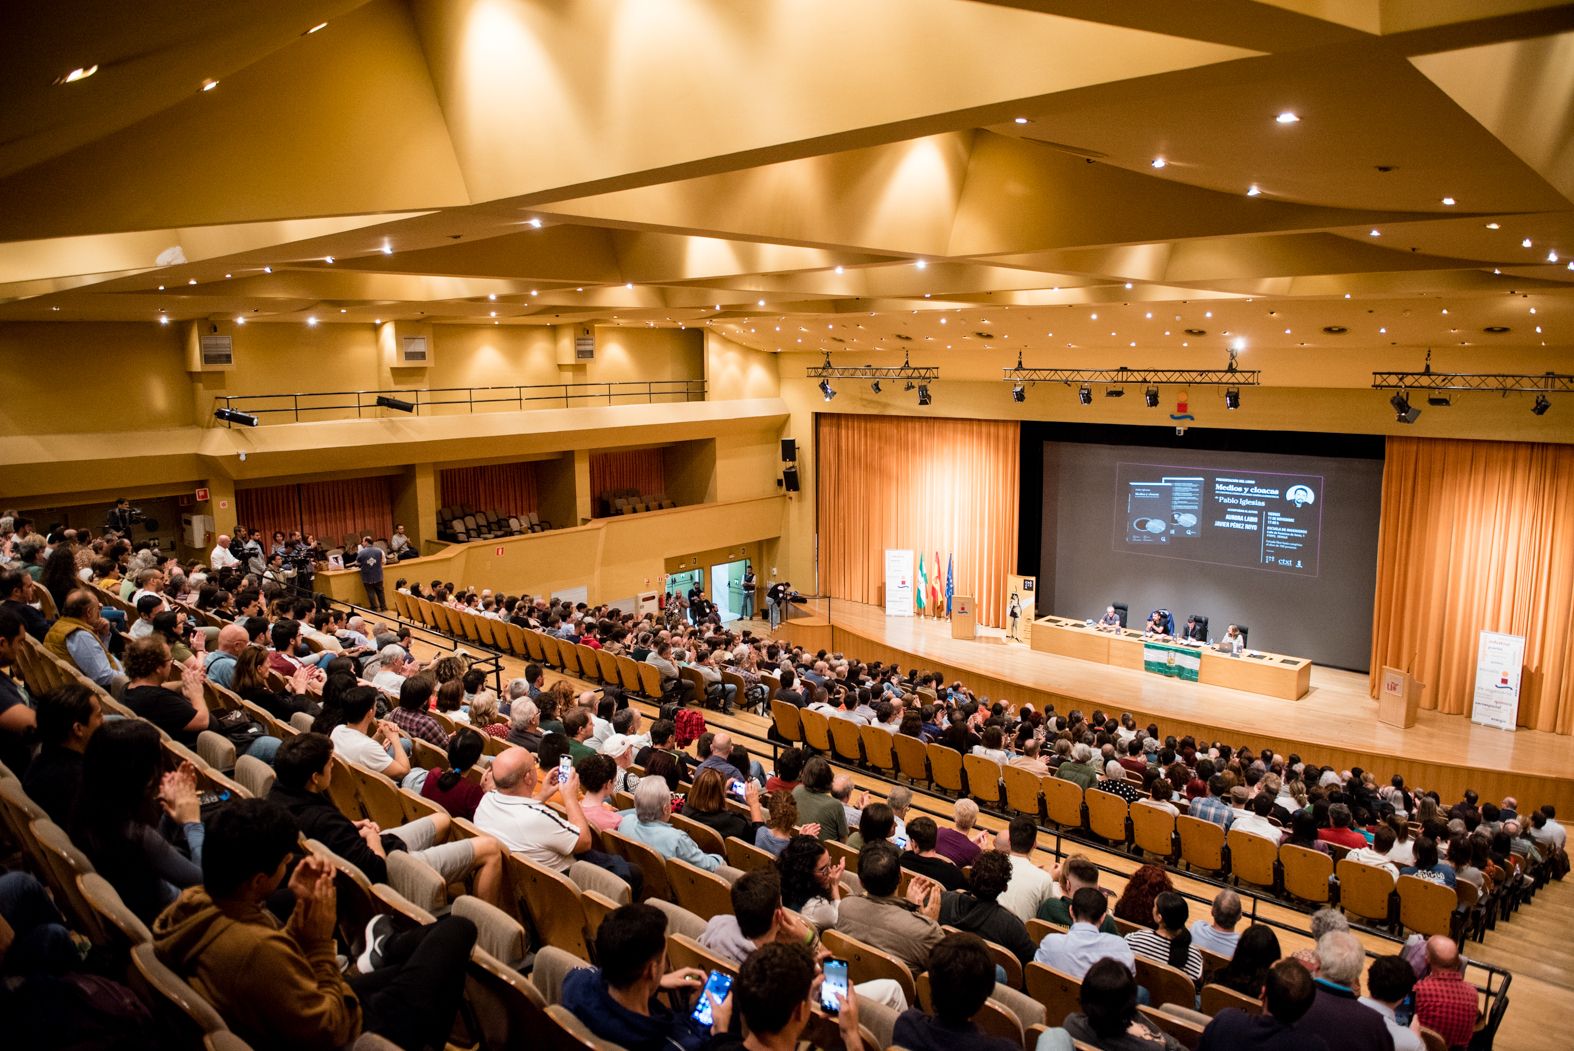 Espectacular aspecto del auditorio de la Escuela de Ingenieros de Sevilla, este viernes, en la presentación del libro de Pablo Iglesias.